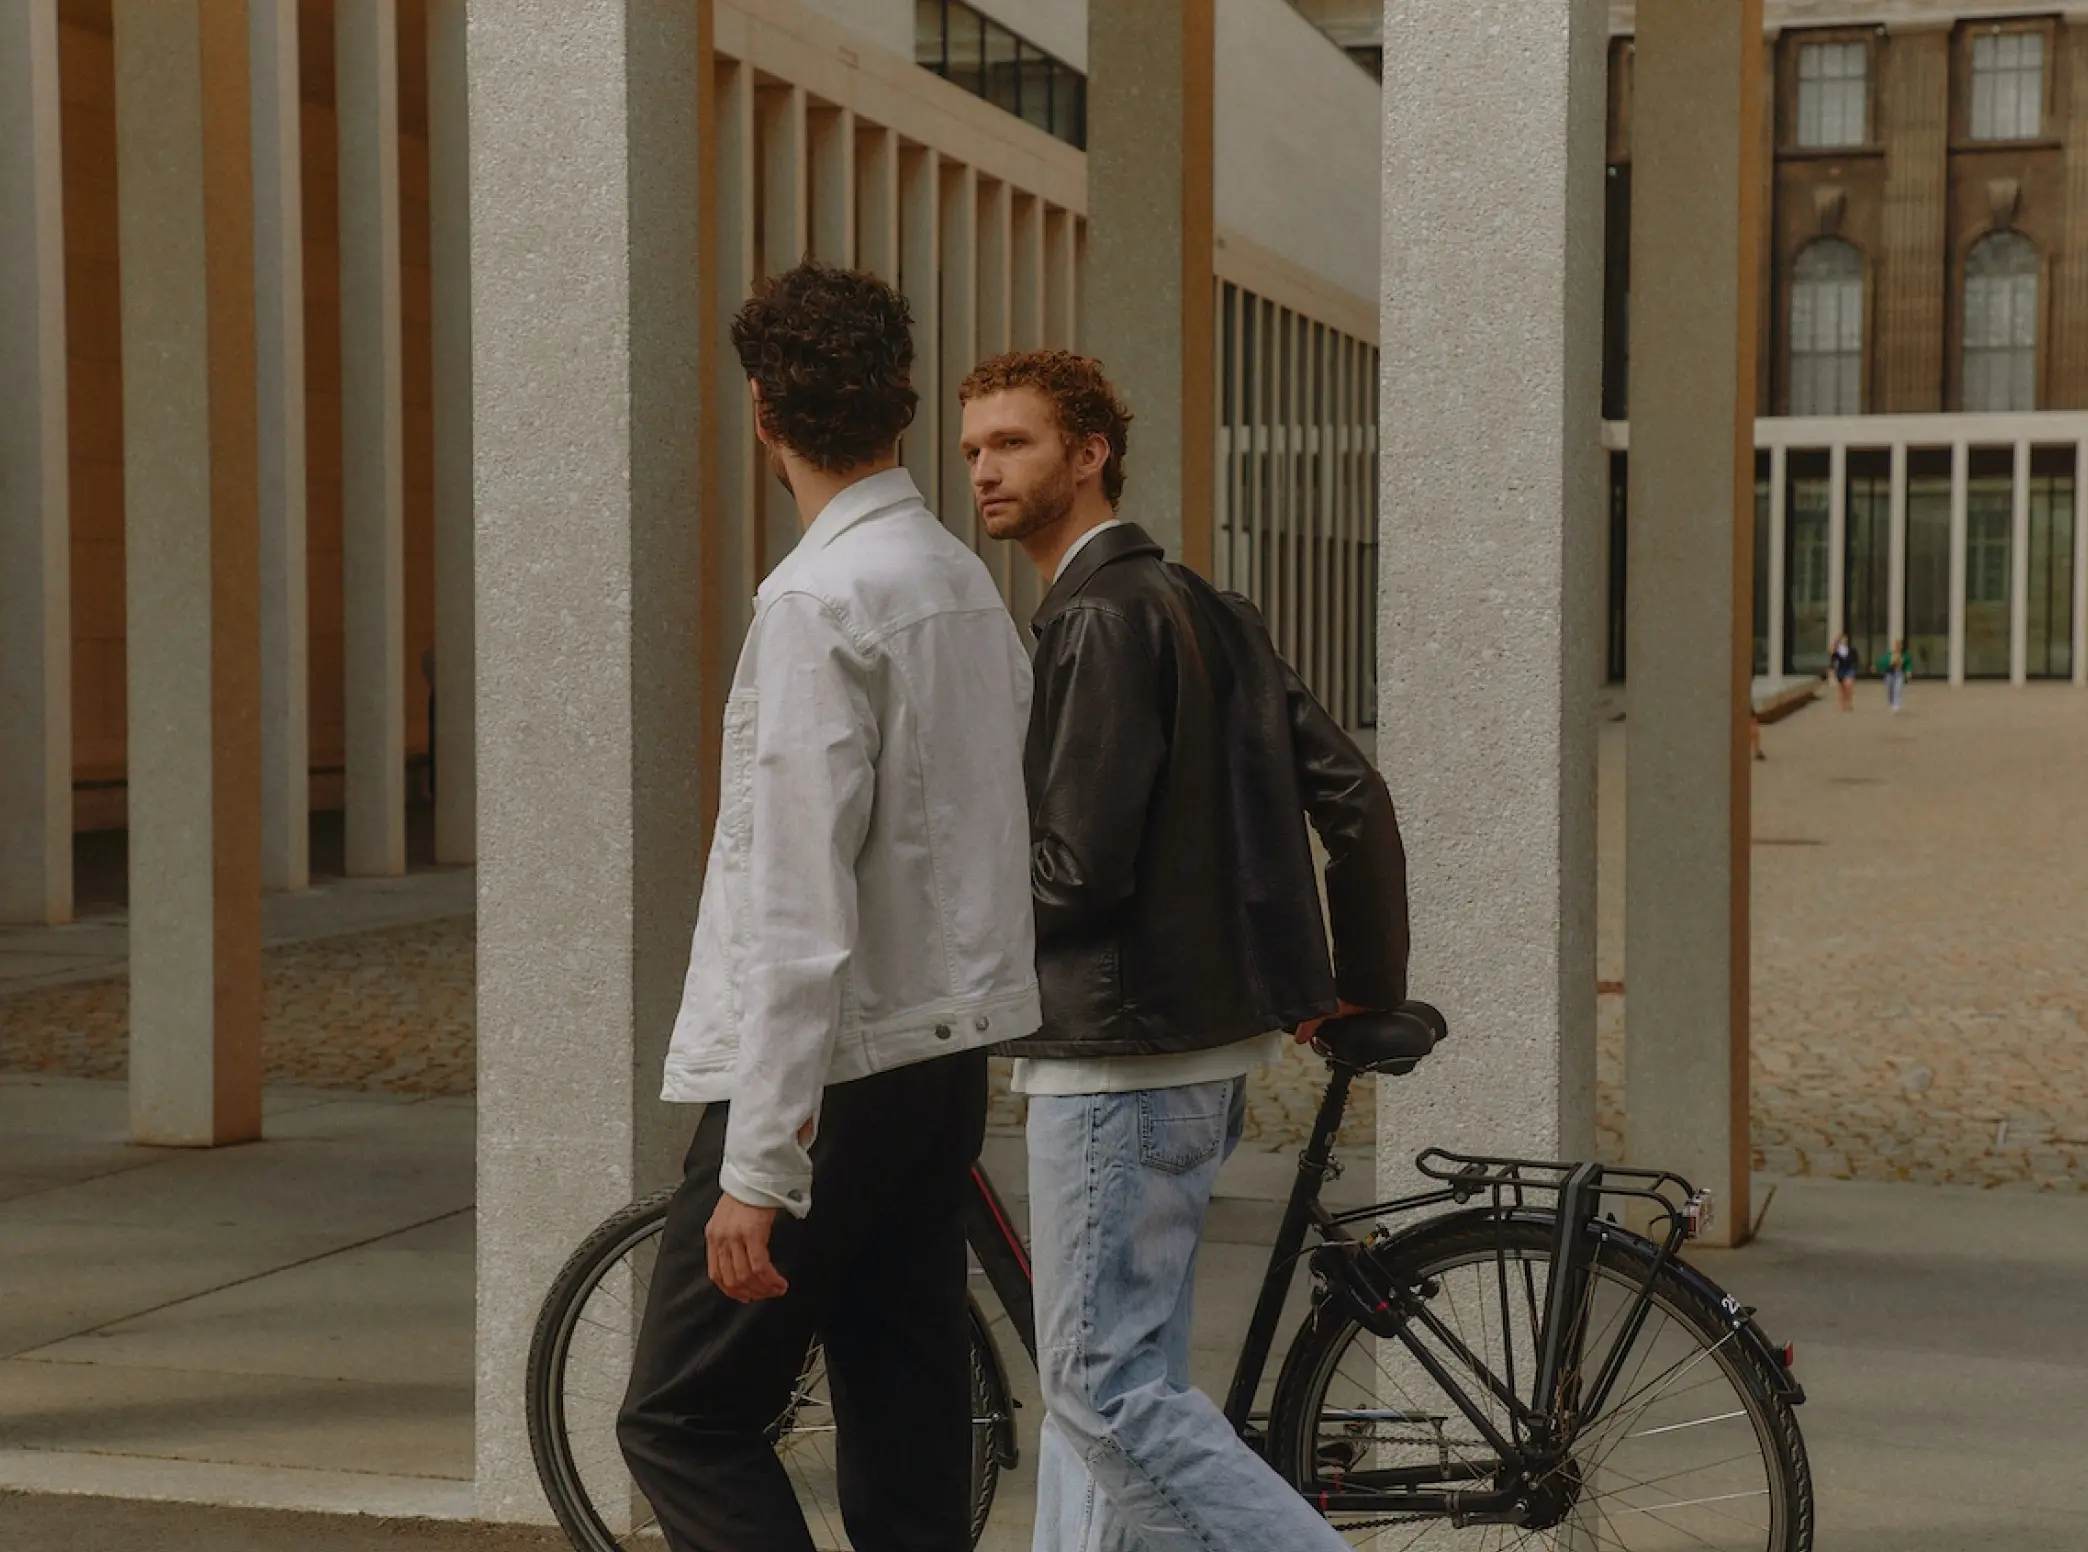 two men walking down a sidewalk next to a bike